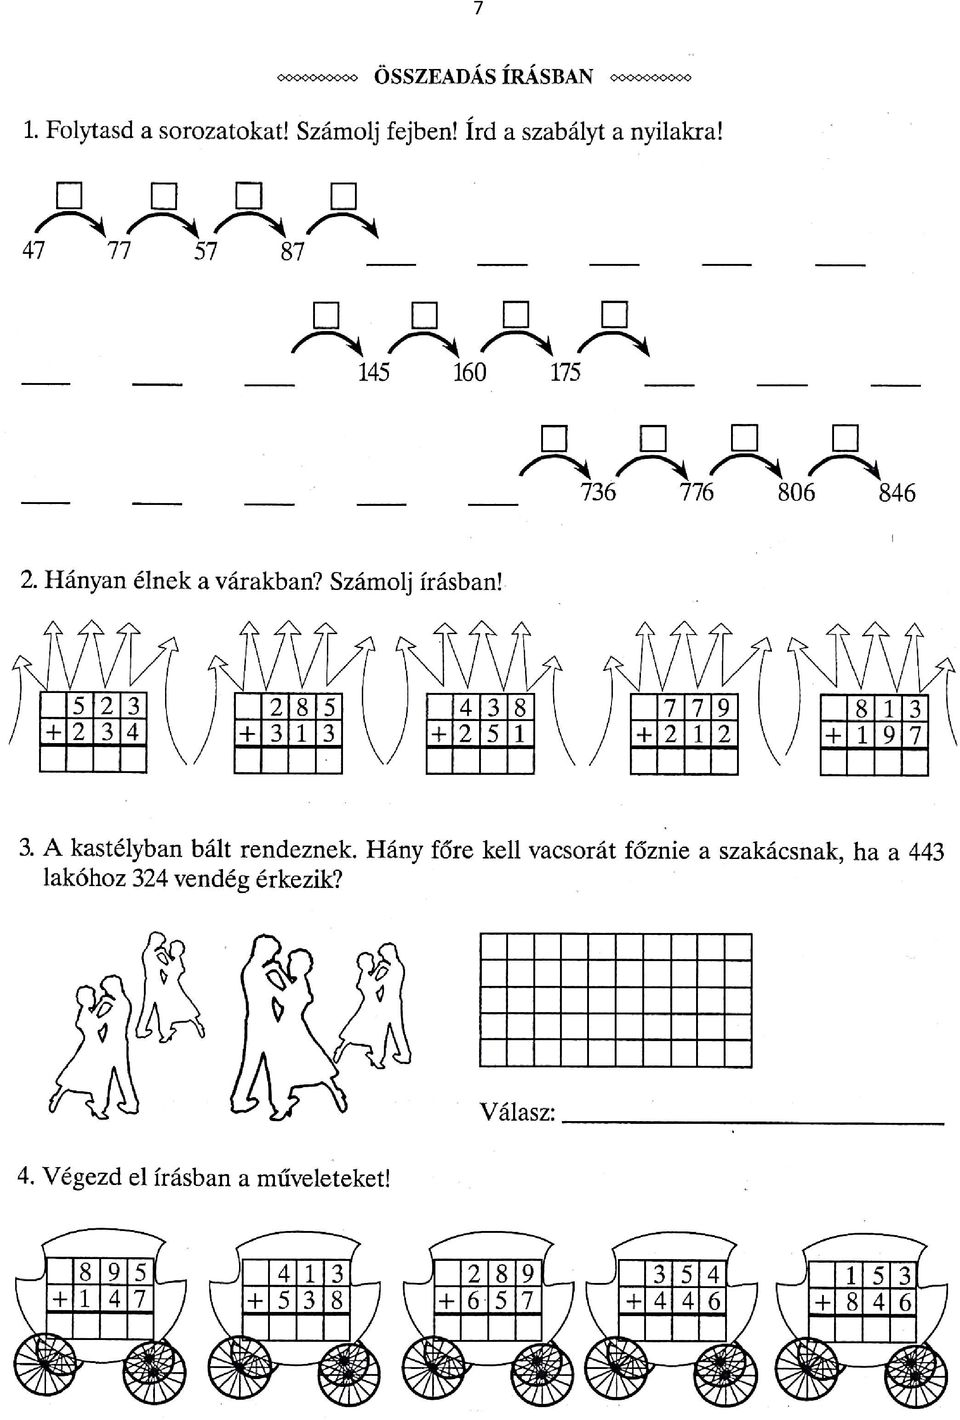 1. Matematika jellegű feladatok 3-4. osztályosoknak - PDF Free Download